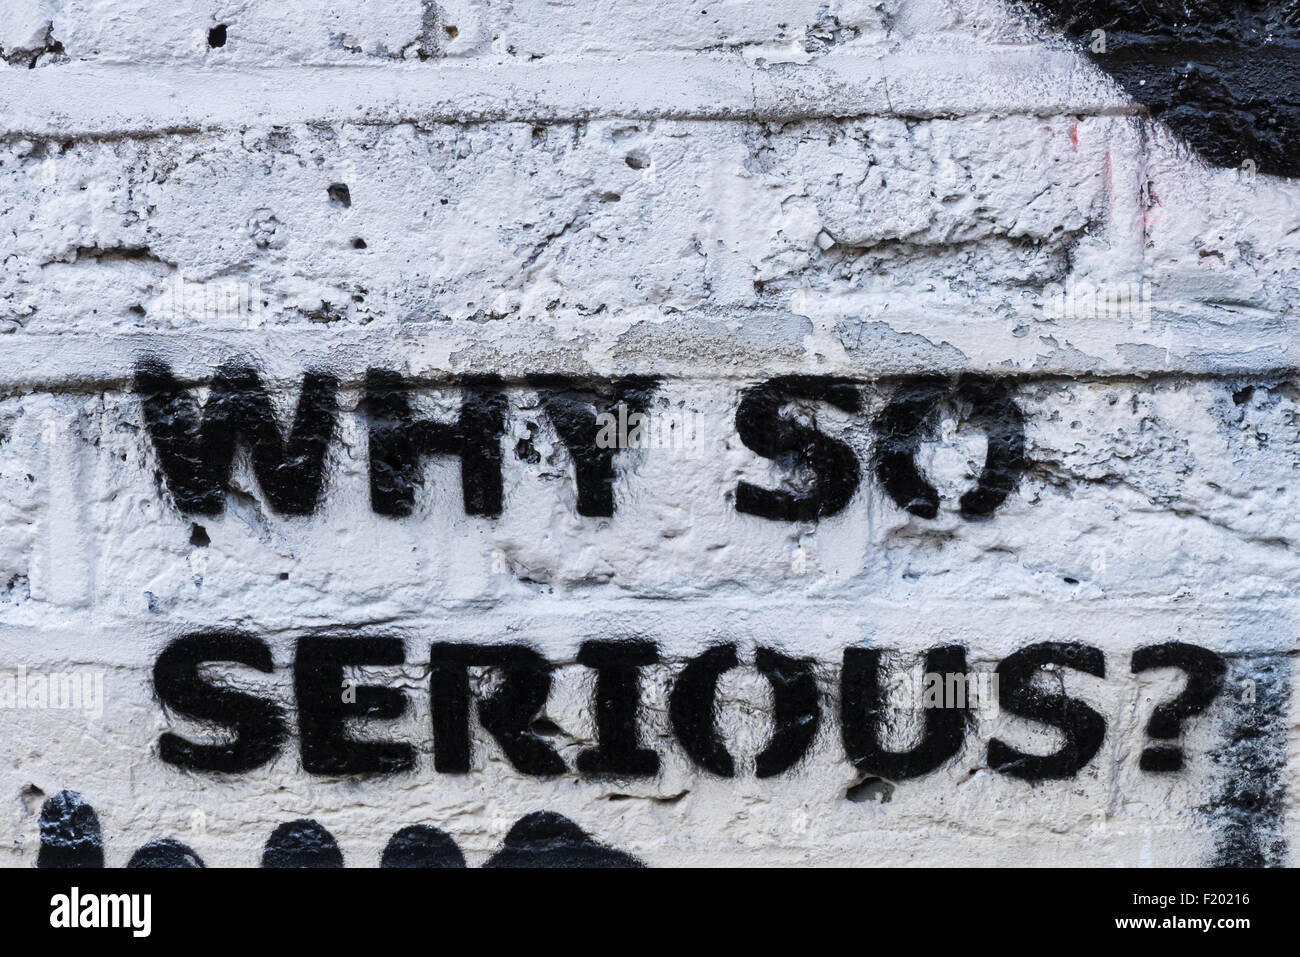 Spitalfields, London. Graffiti auf eine weiß lackierte Mauer: "why so serious?". Stockfoto